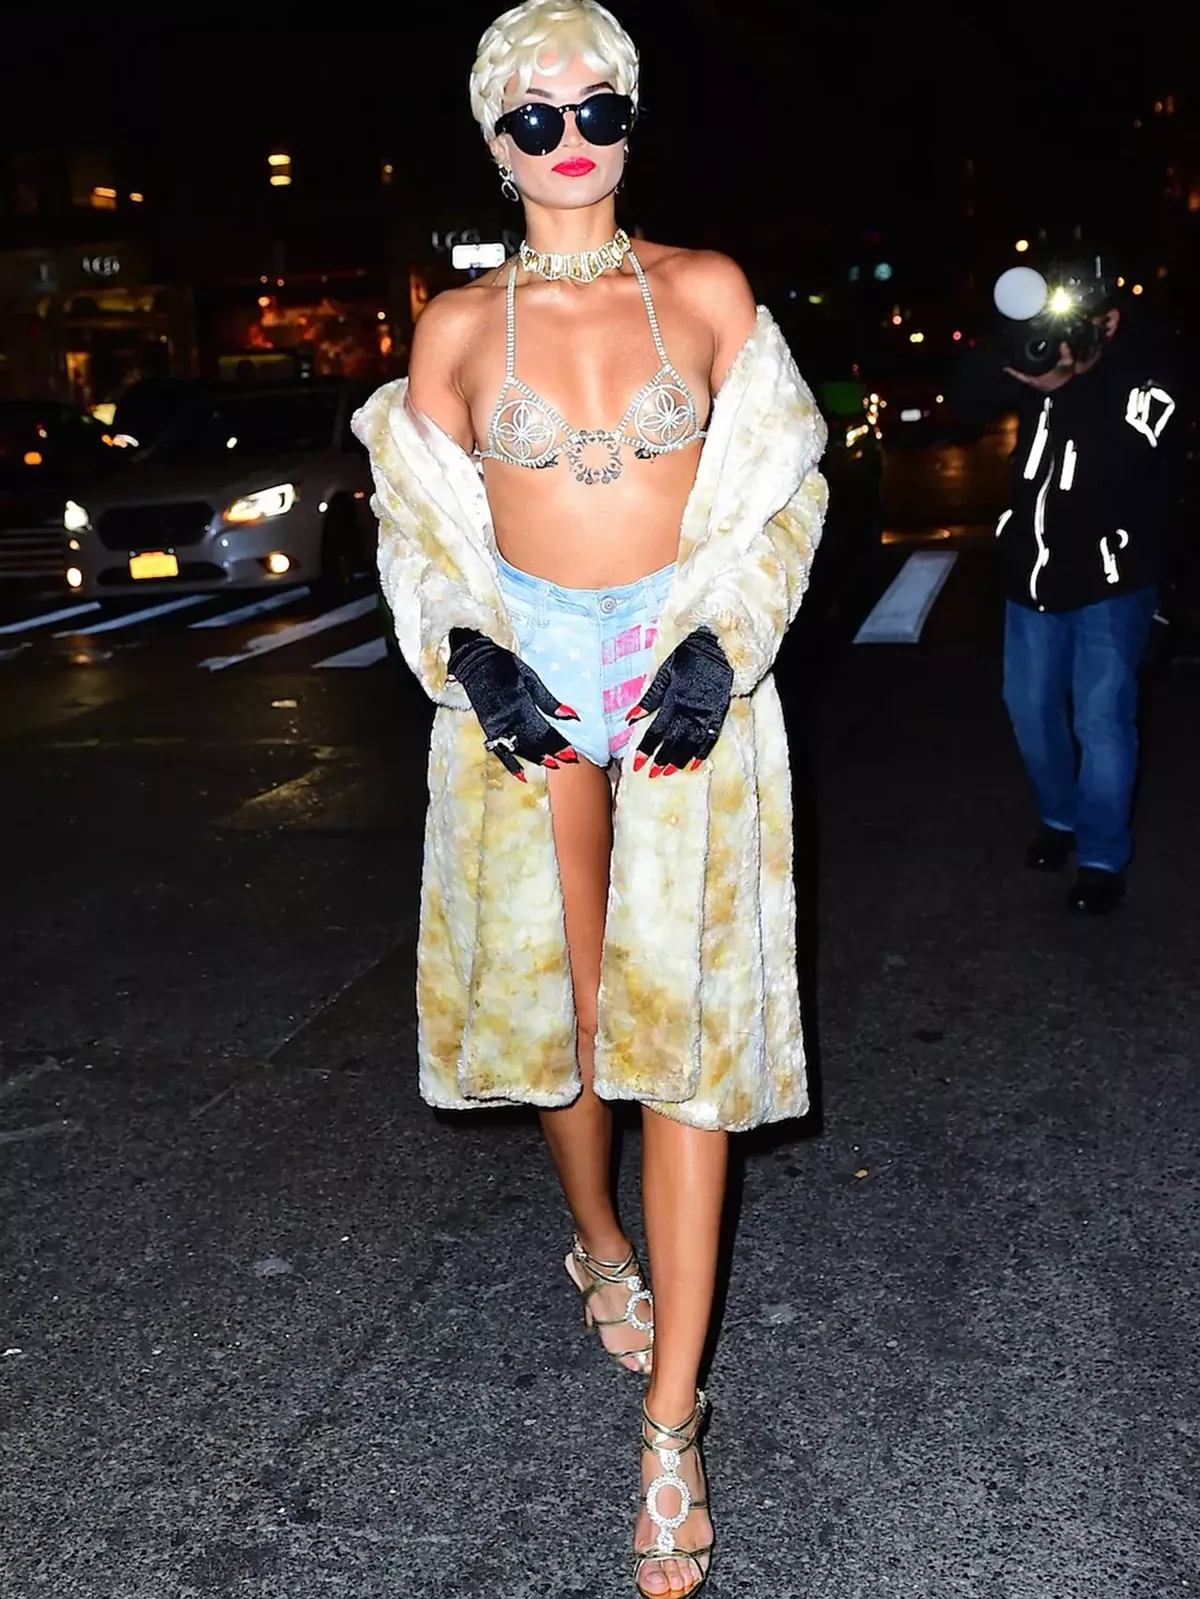 Shanina Shaik dressed as Rihanna